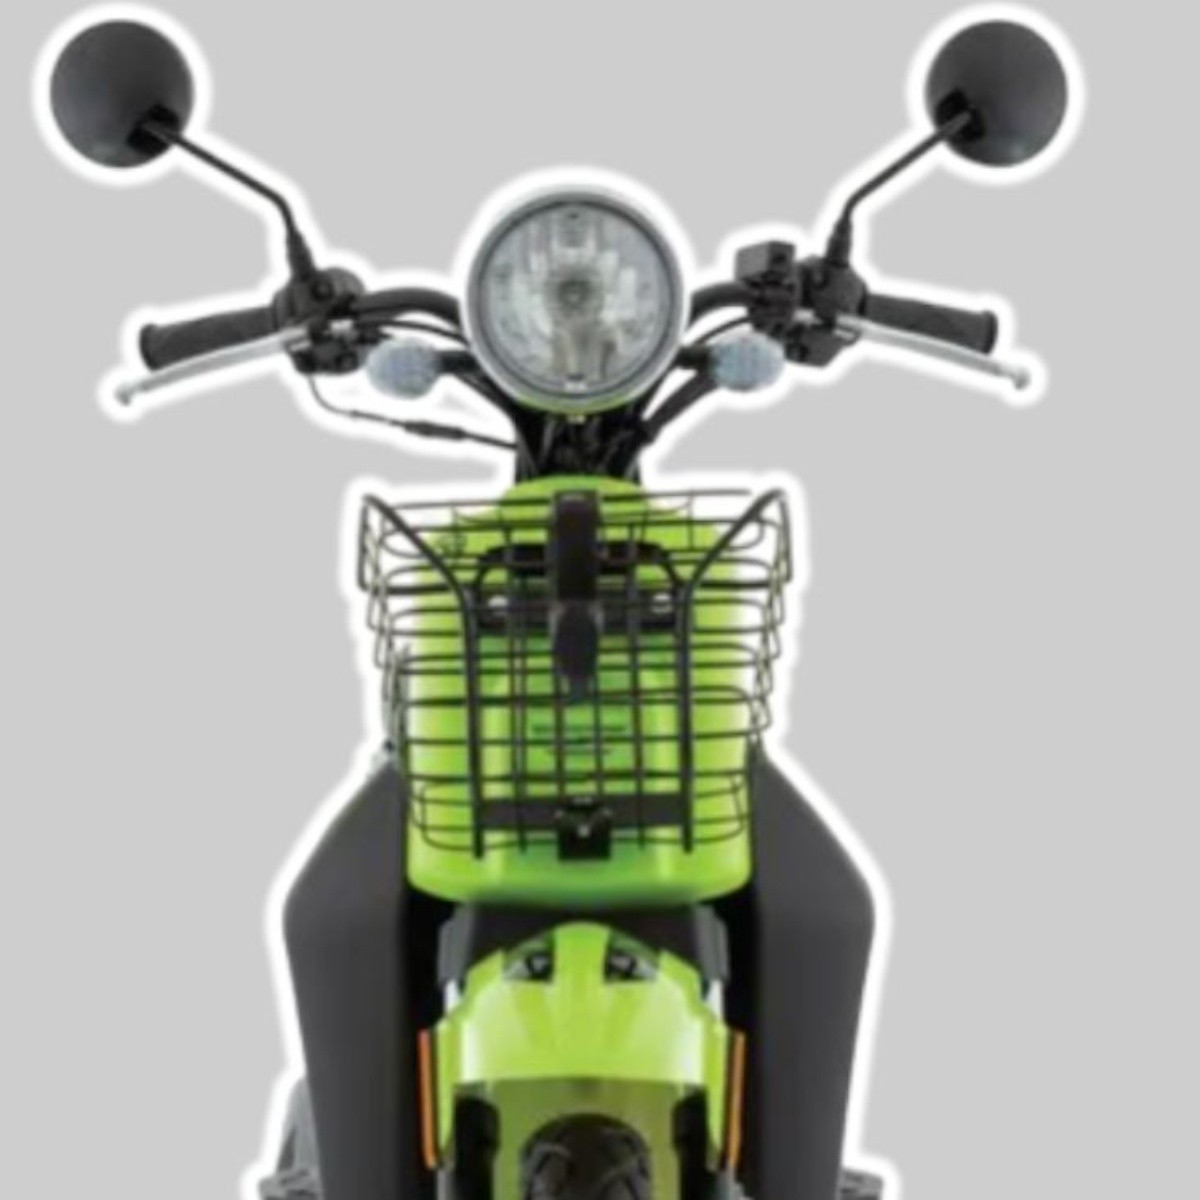 elektra tiene en rebaja moto italika verde con sistema de arranque eléctrico $6,825 más barata